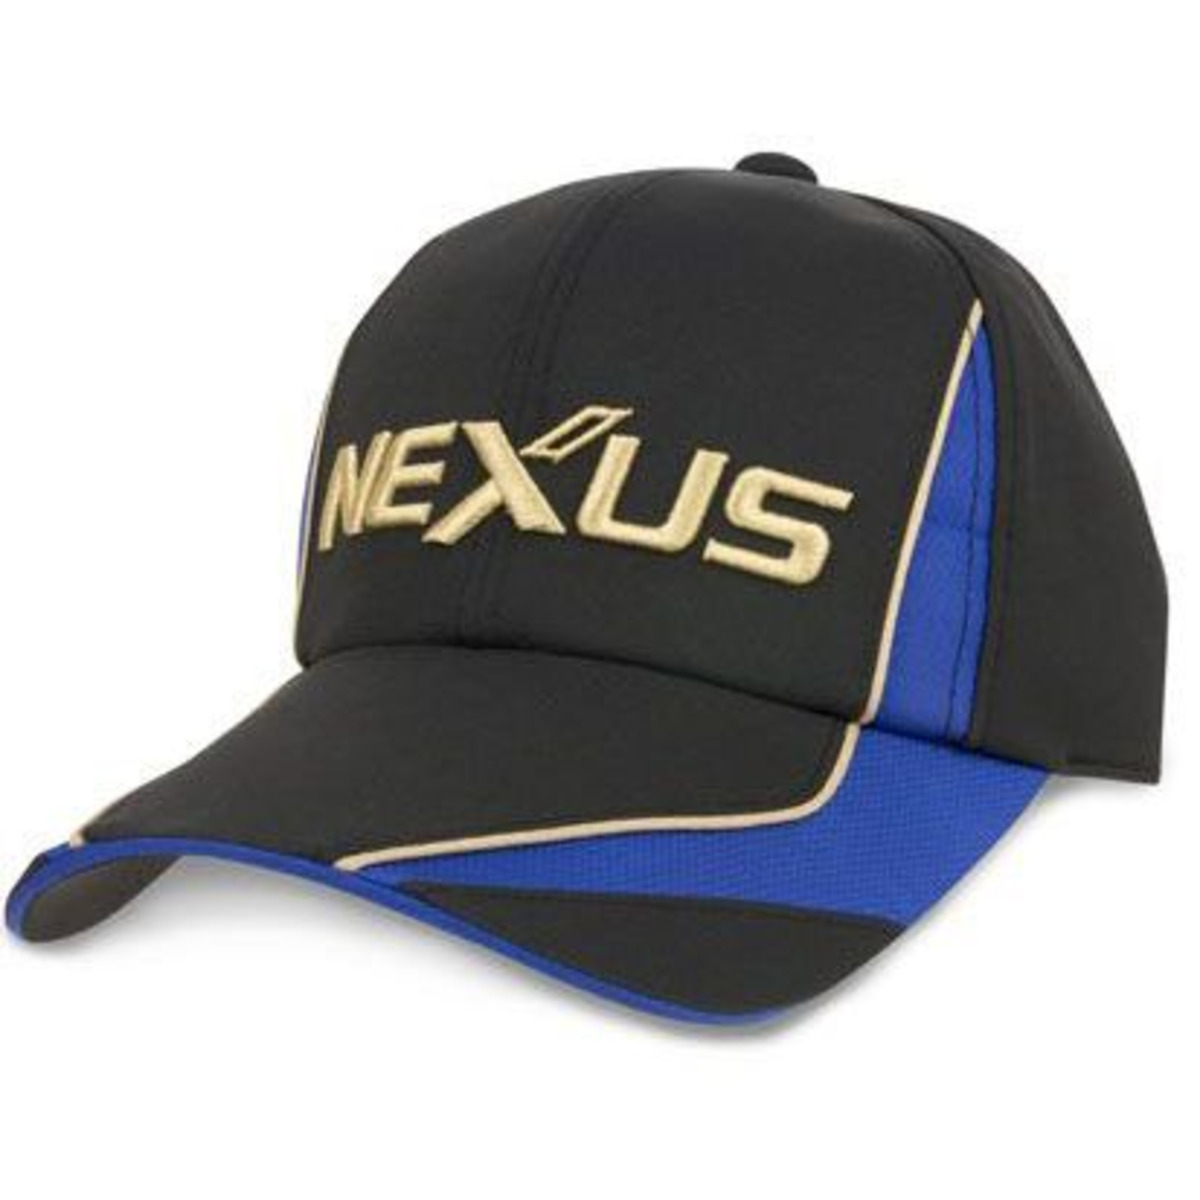 Shimano Nexus Basic Cap - Blue